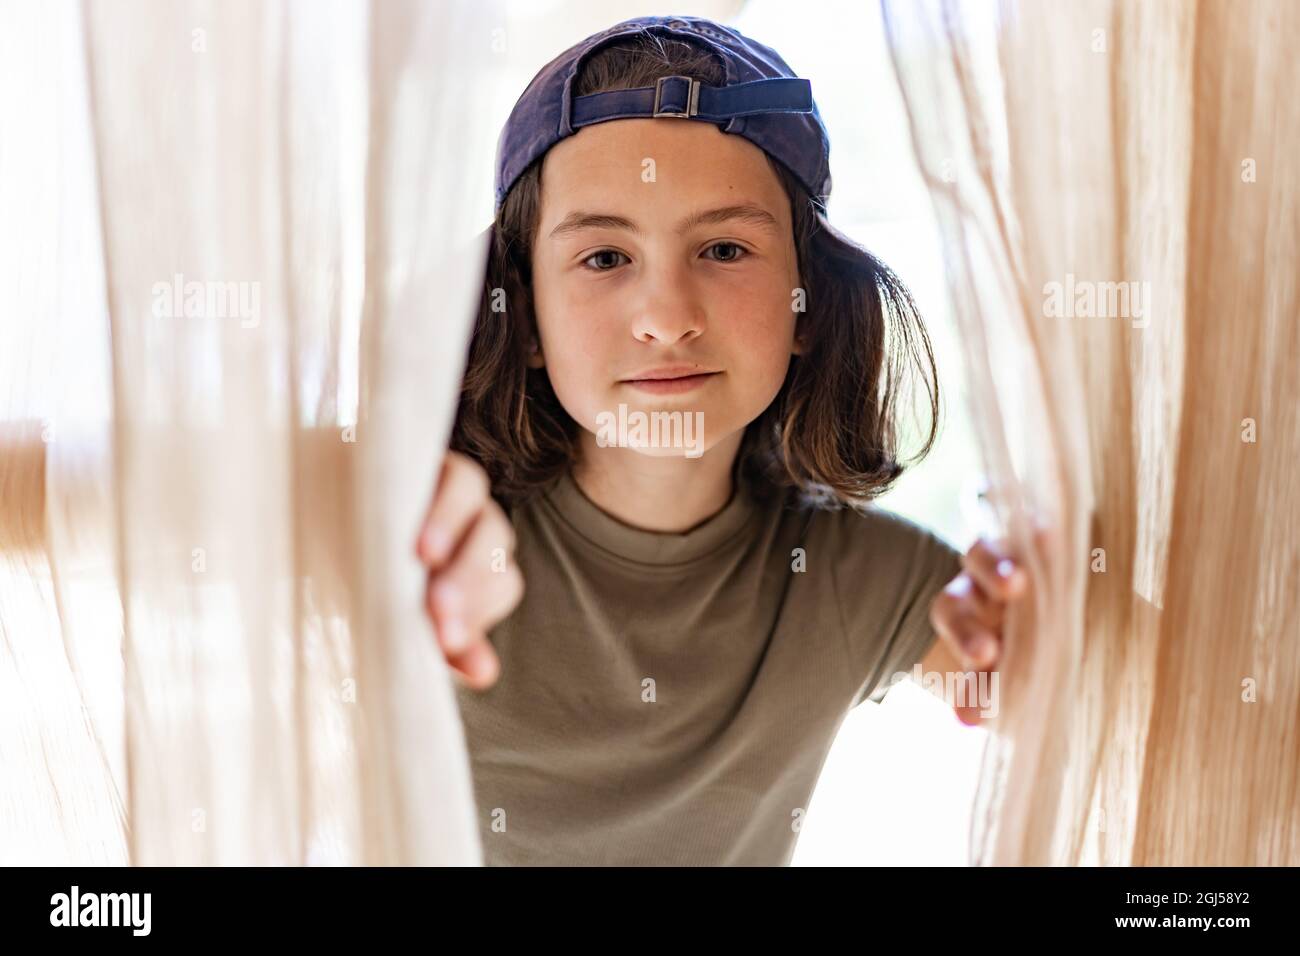 Sommerportrait eines jungen hübschen Mädchens in einer gedrehten Baseballmütze. Fröhlich teen brünette Mädchen. Nahaufnahme. Lifestyle-Fotografie. Blick auf die Kamera Stockfoto